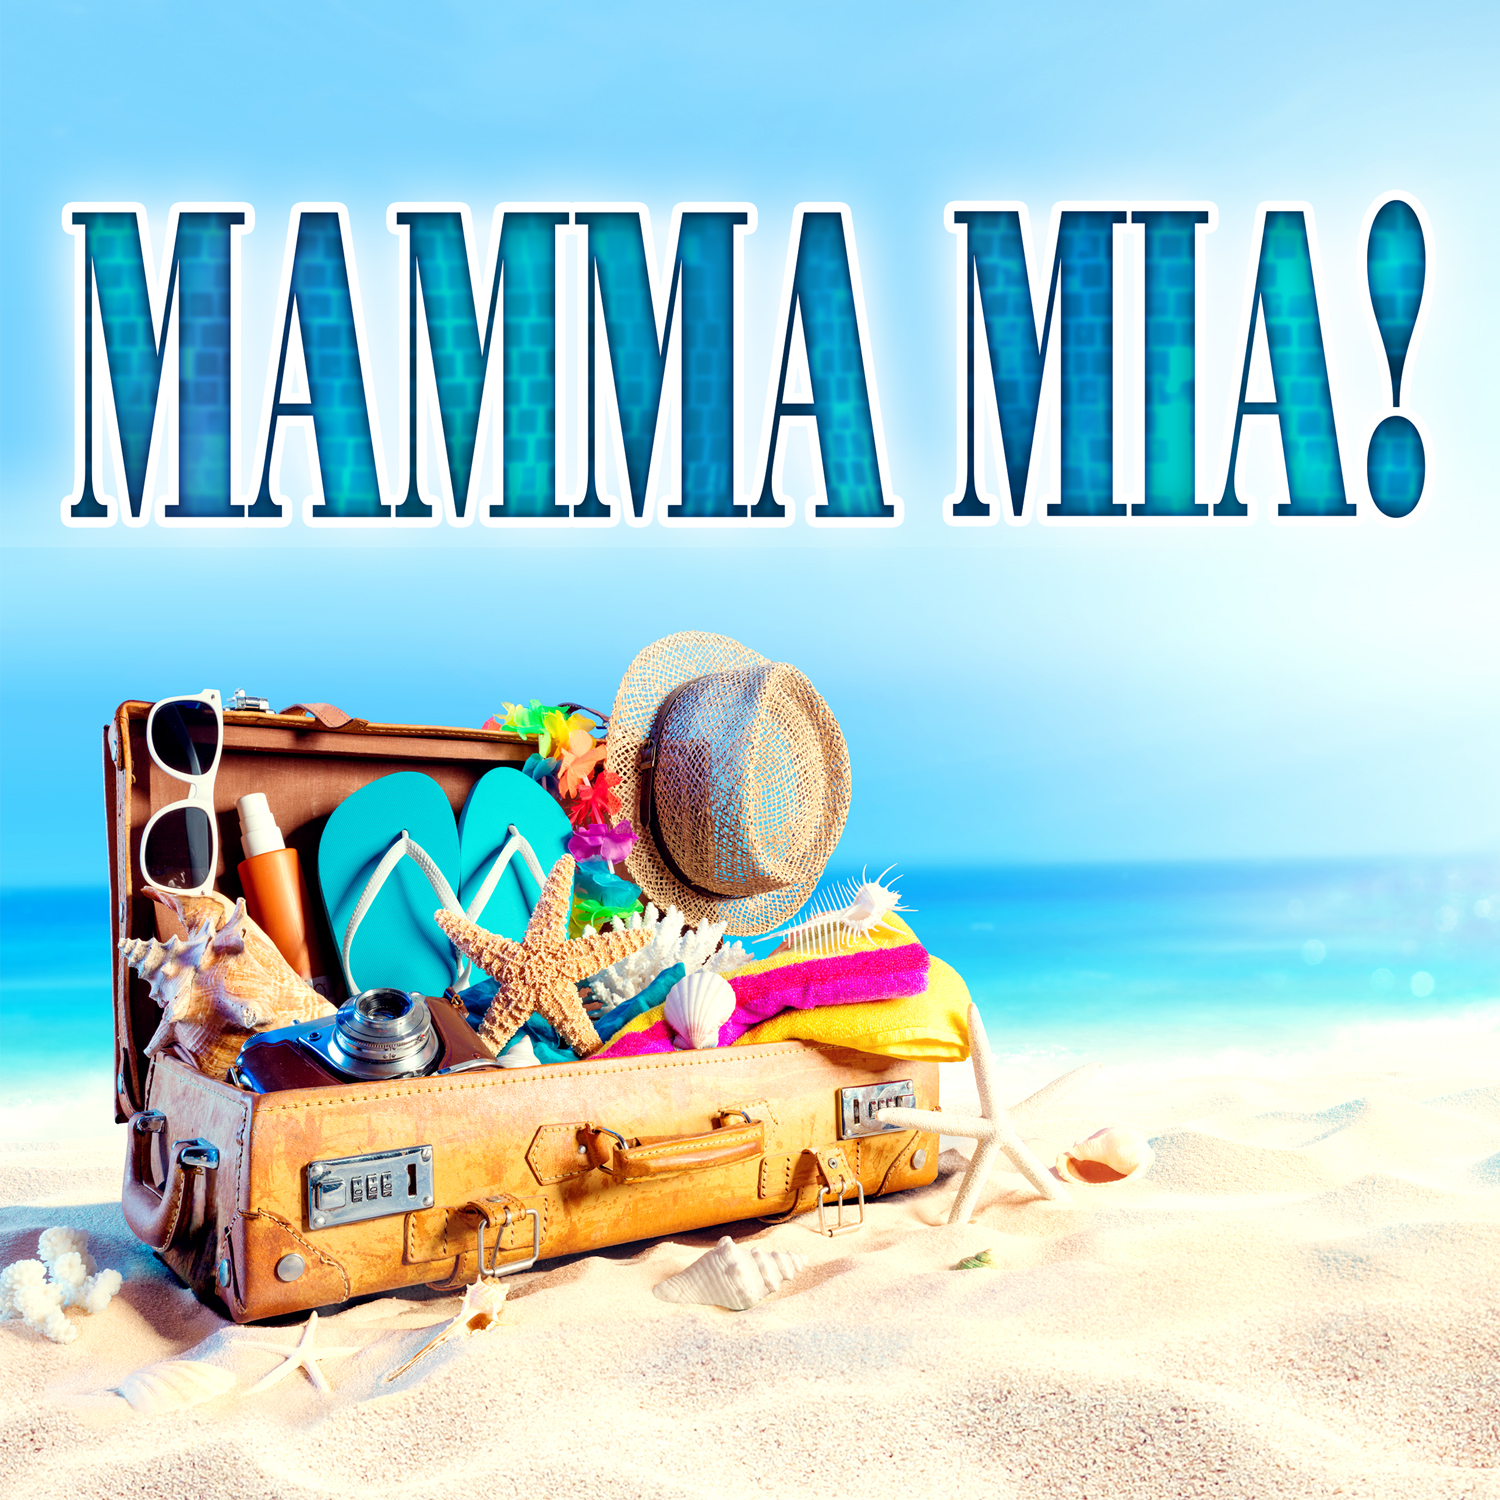 Mamma Mia the Musical